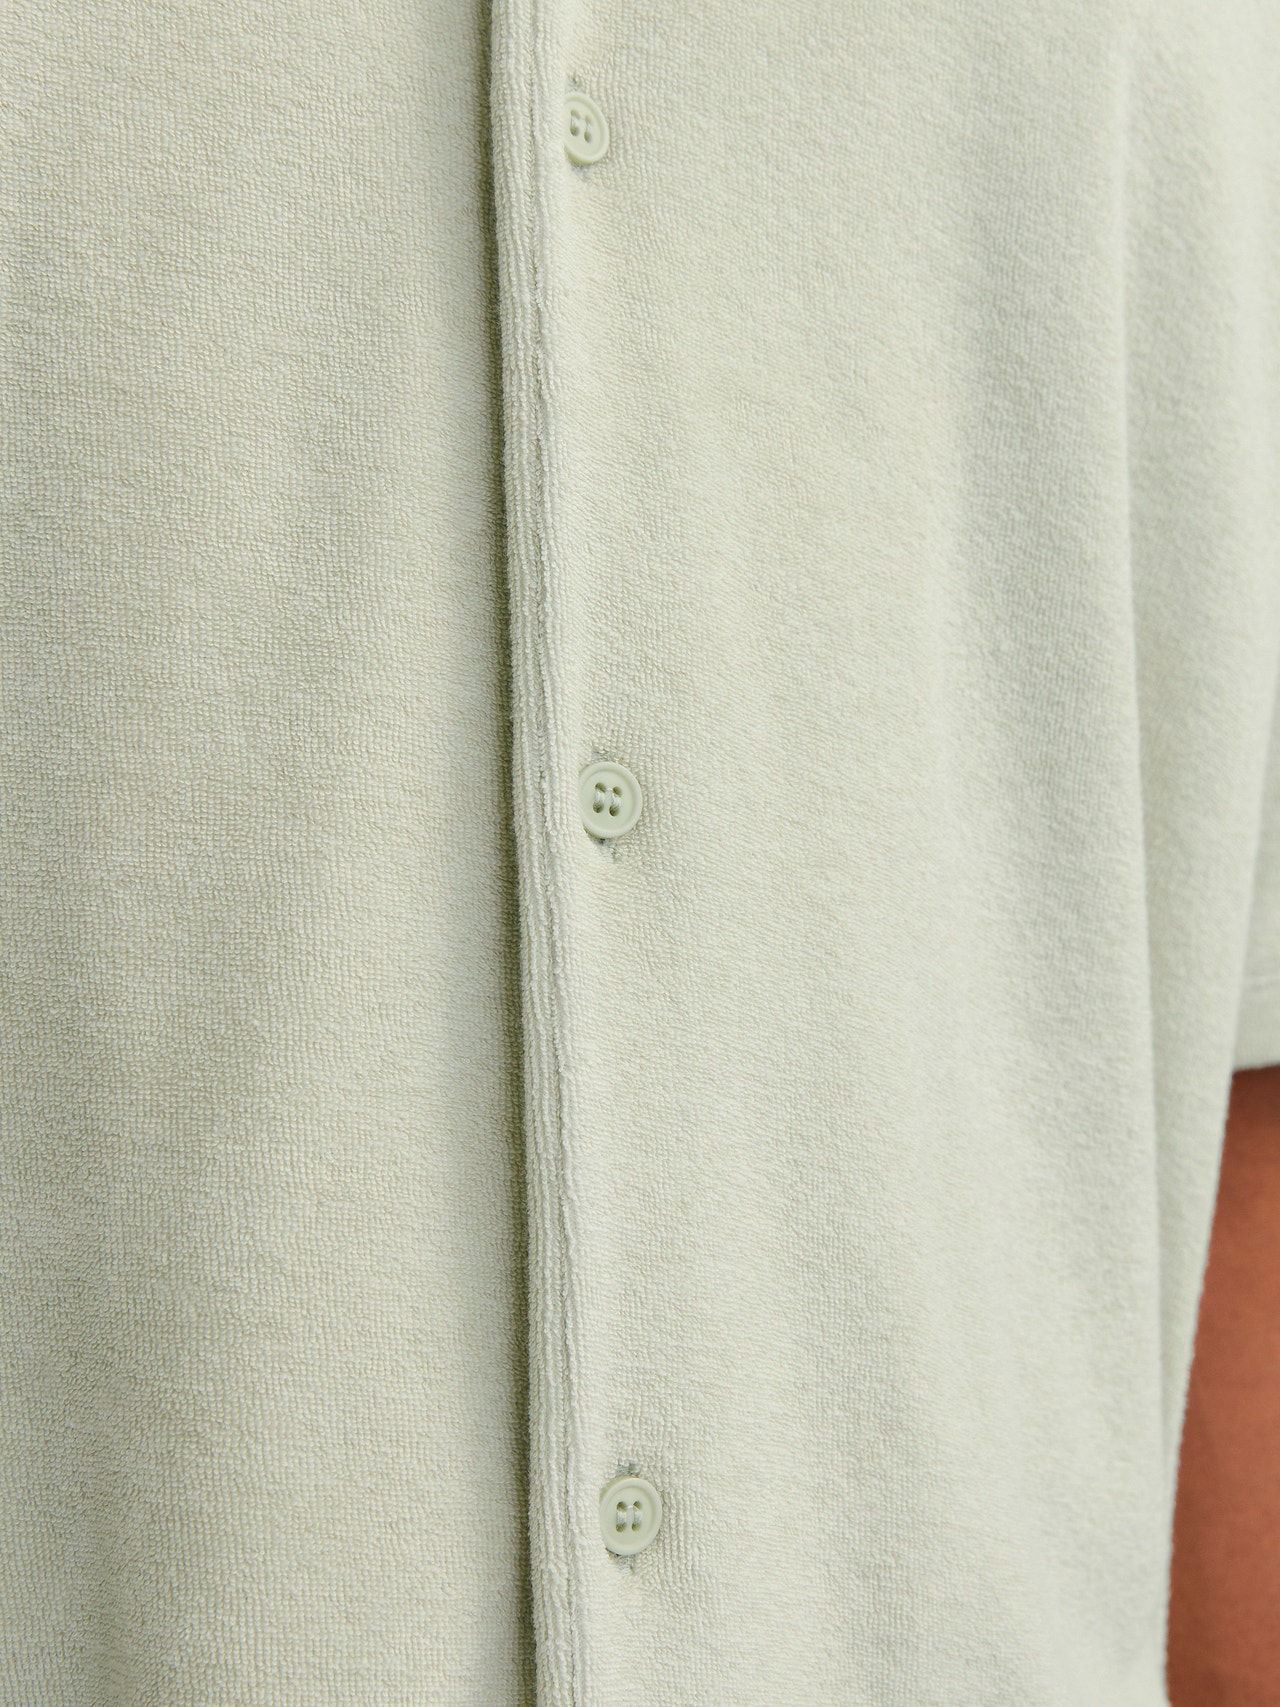 Jack & Jones Yksivärinen Polo T-shirt -Green Tint - 12236581